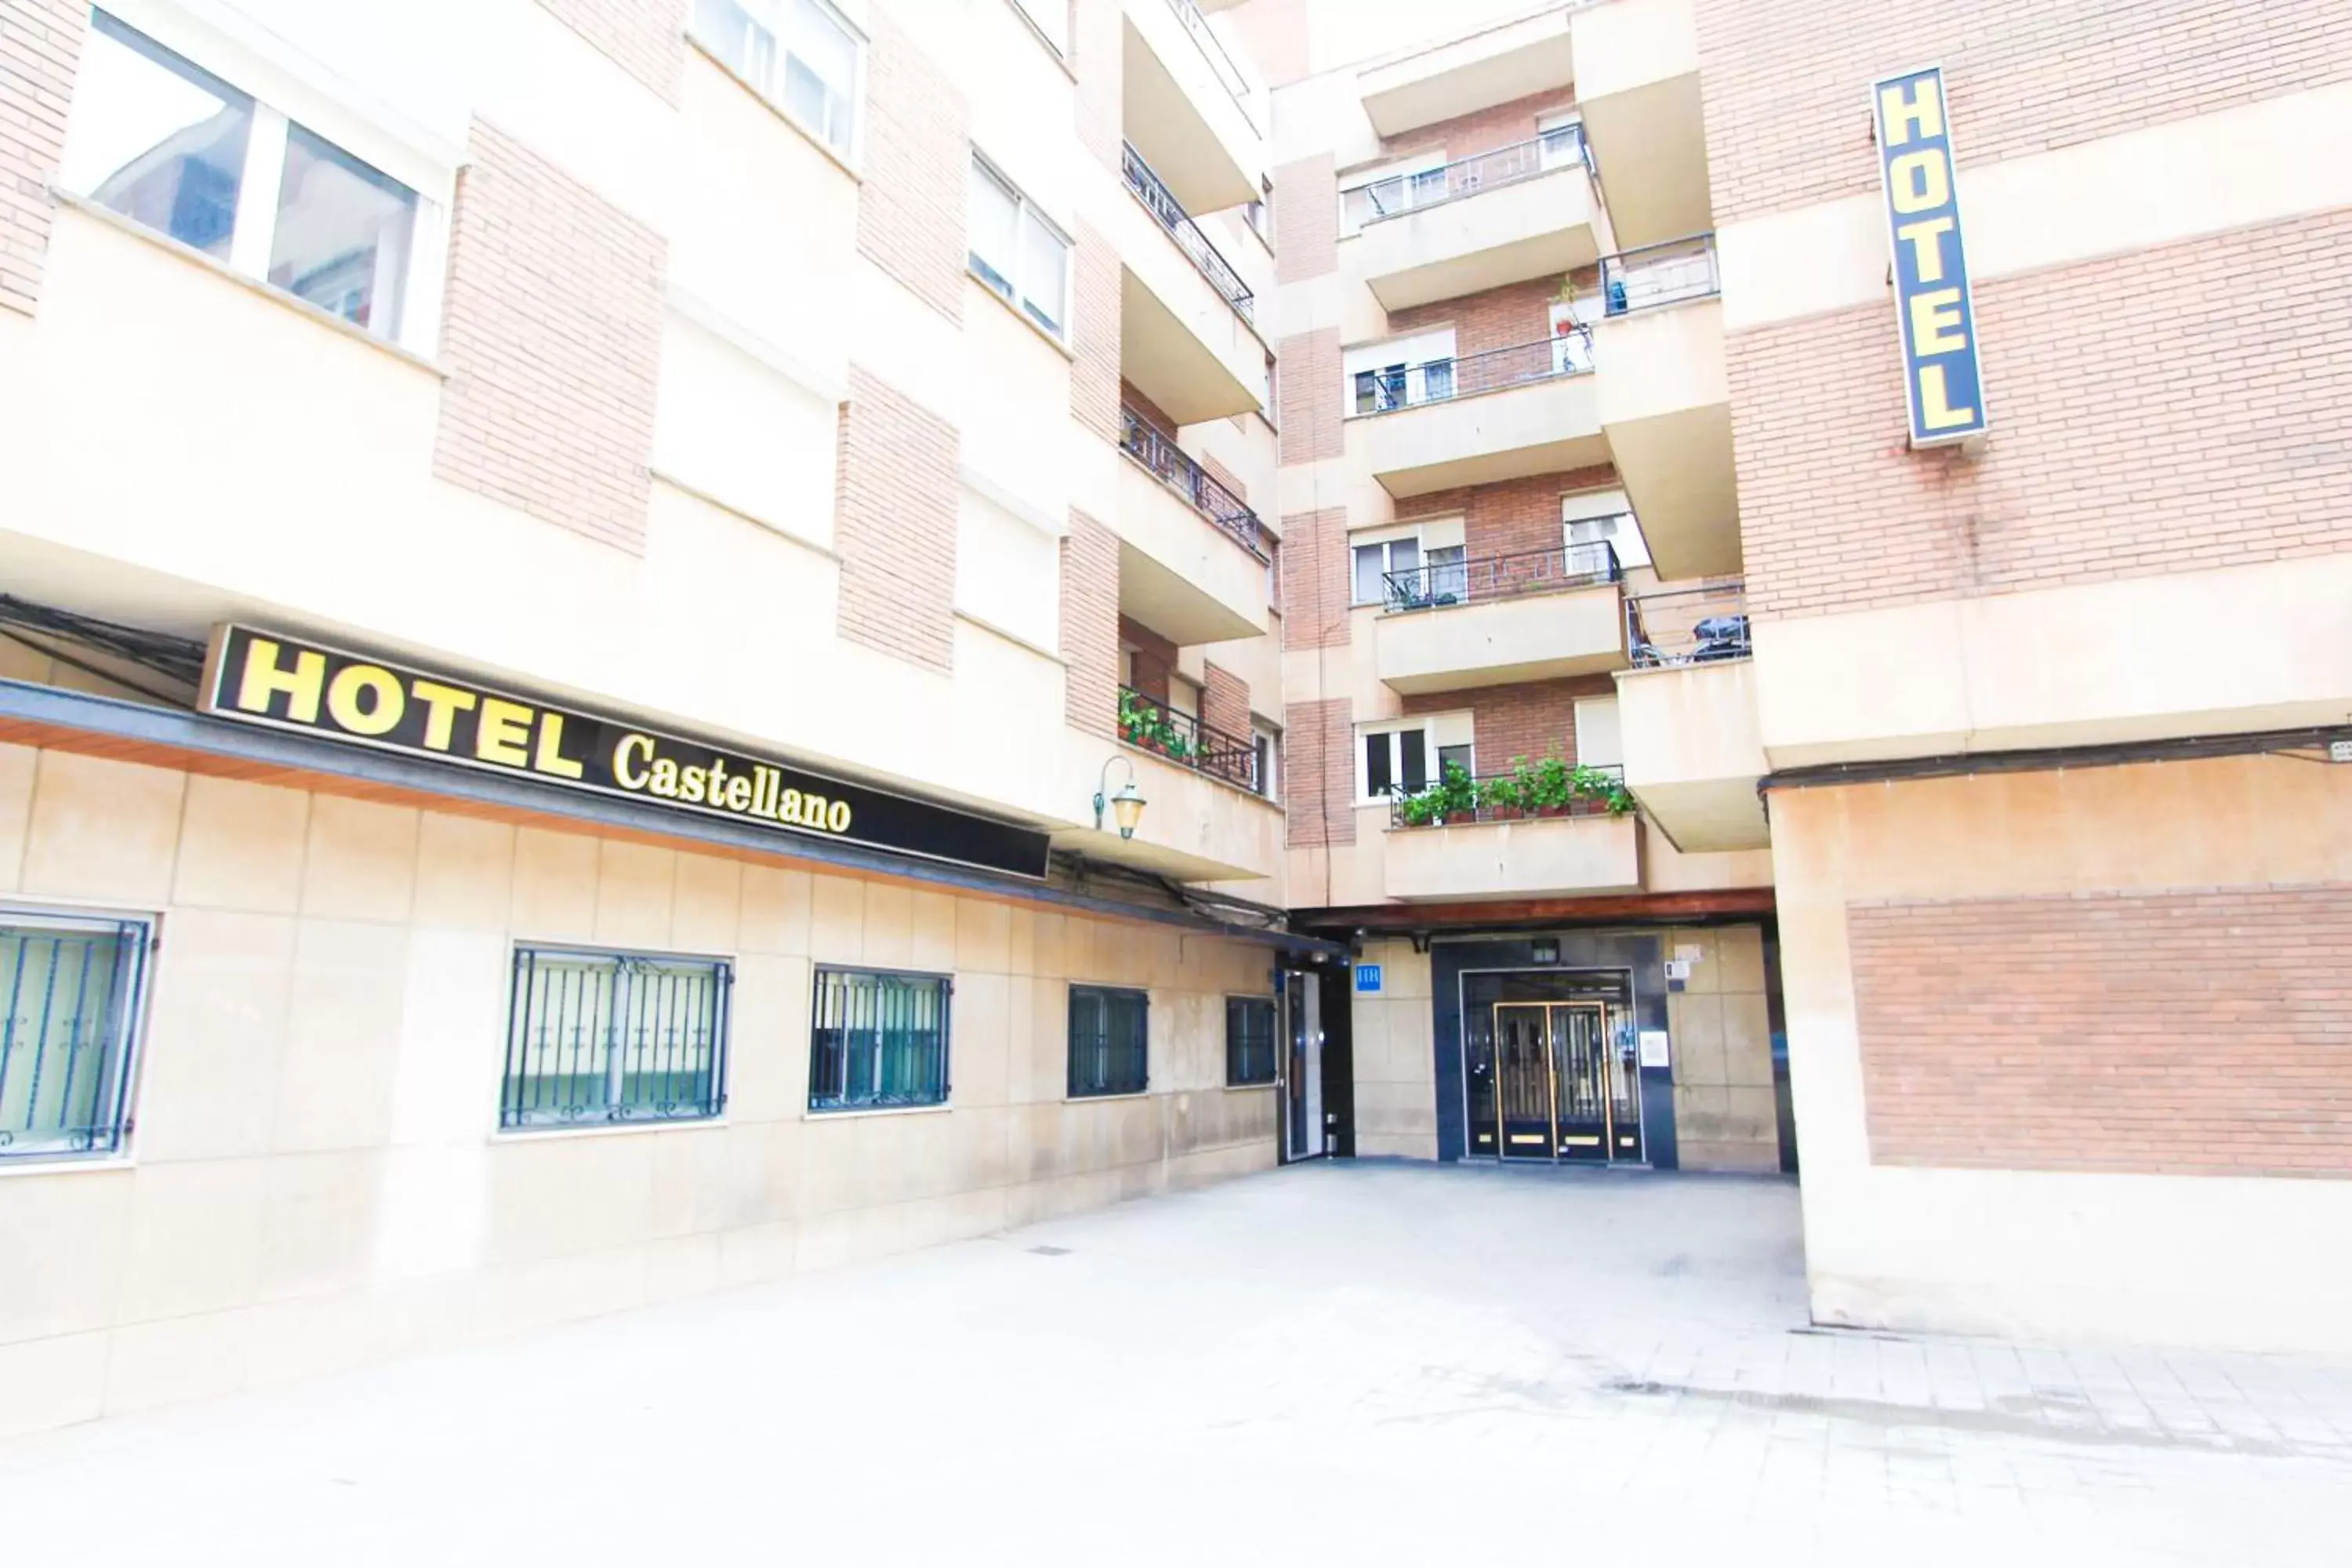 Property Building in Hotel Castellano Centro